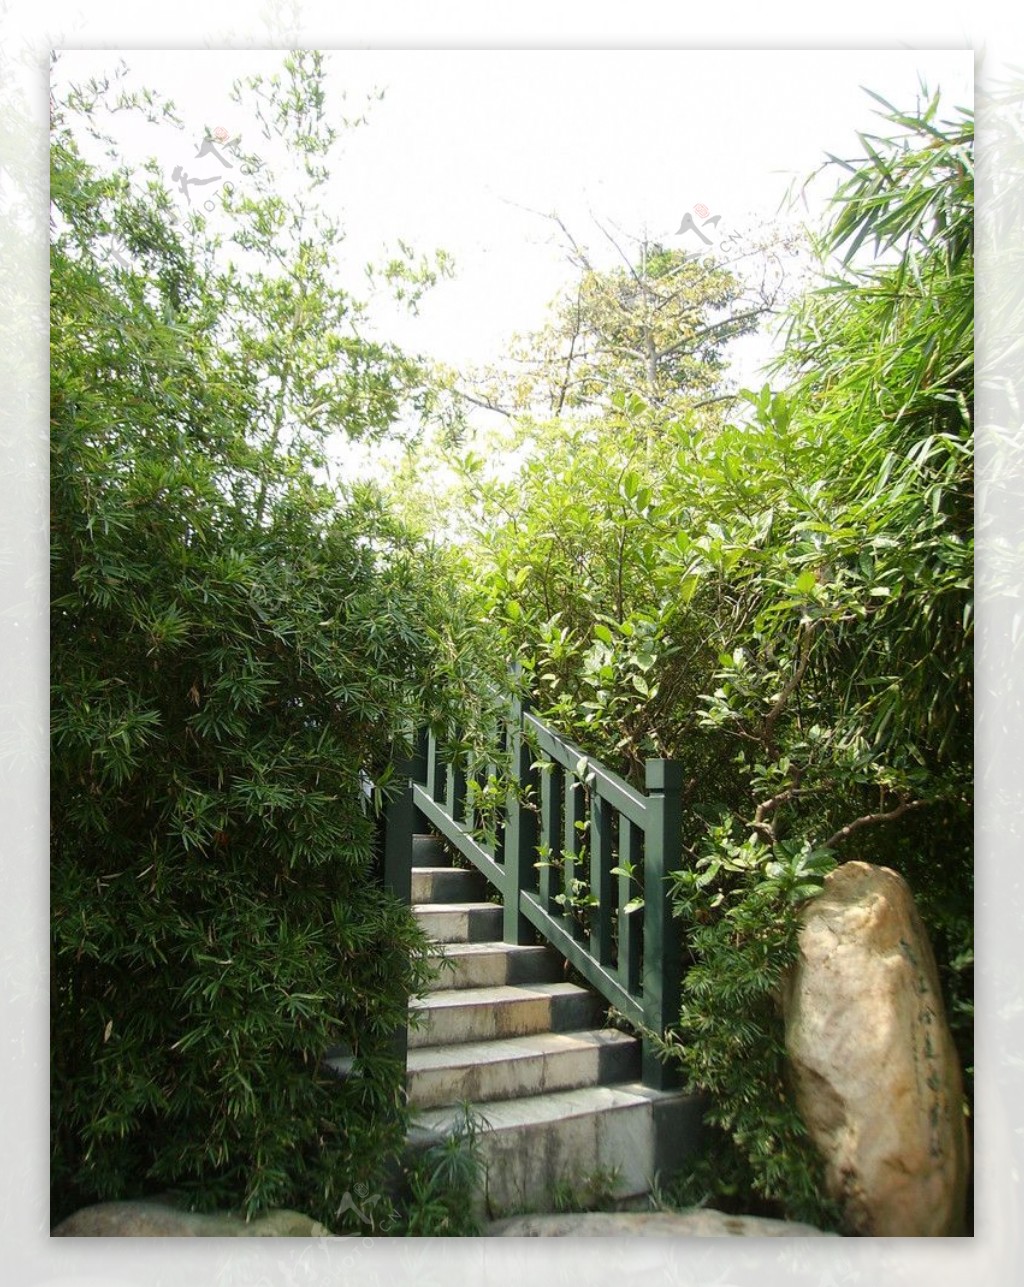 石梯竹子石头园林图片